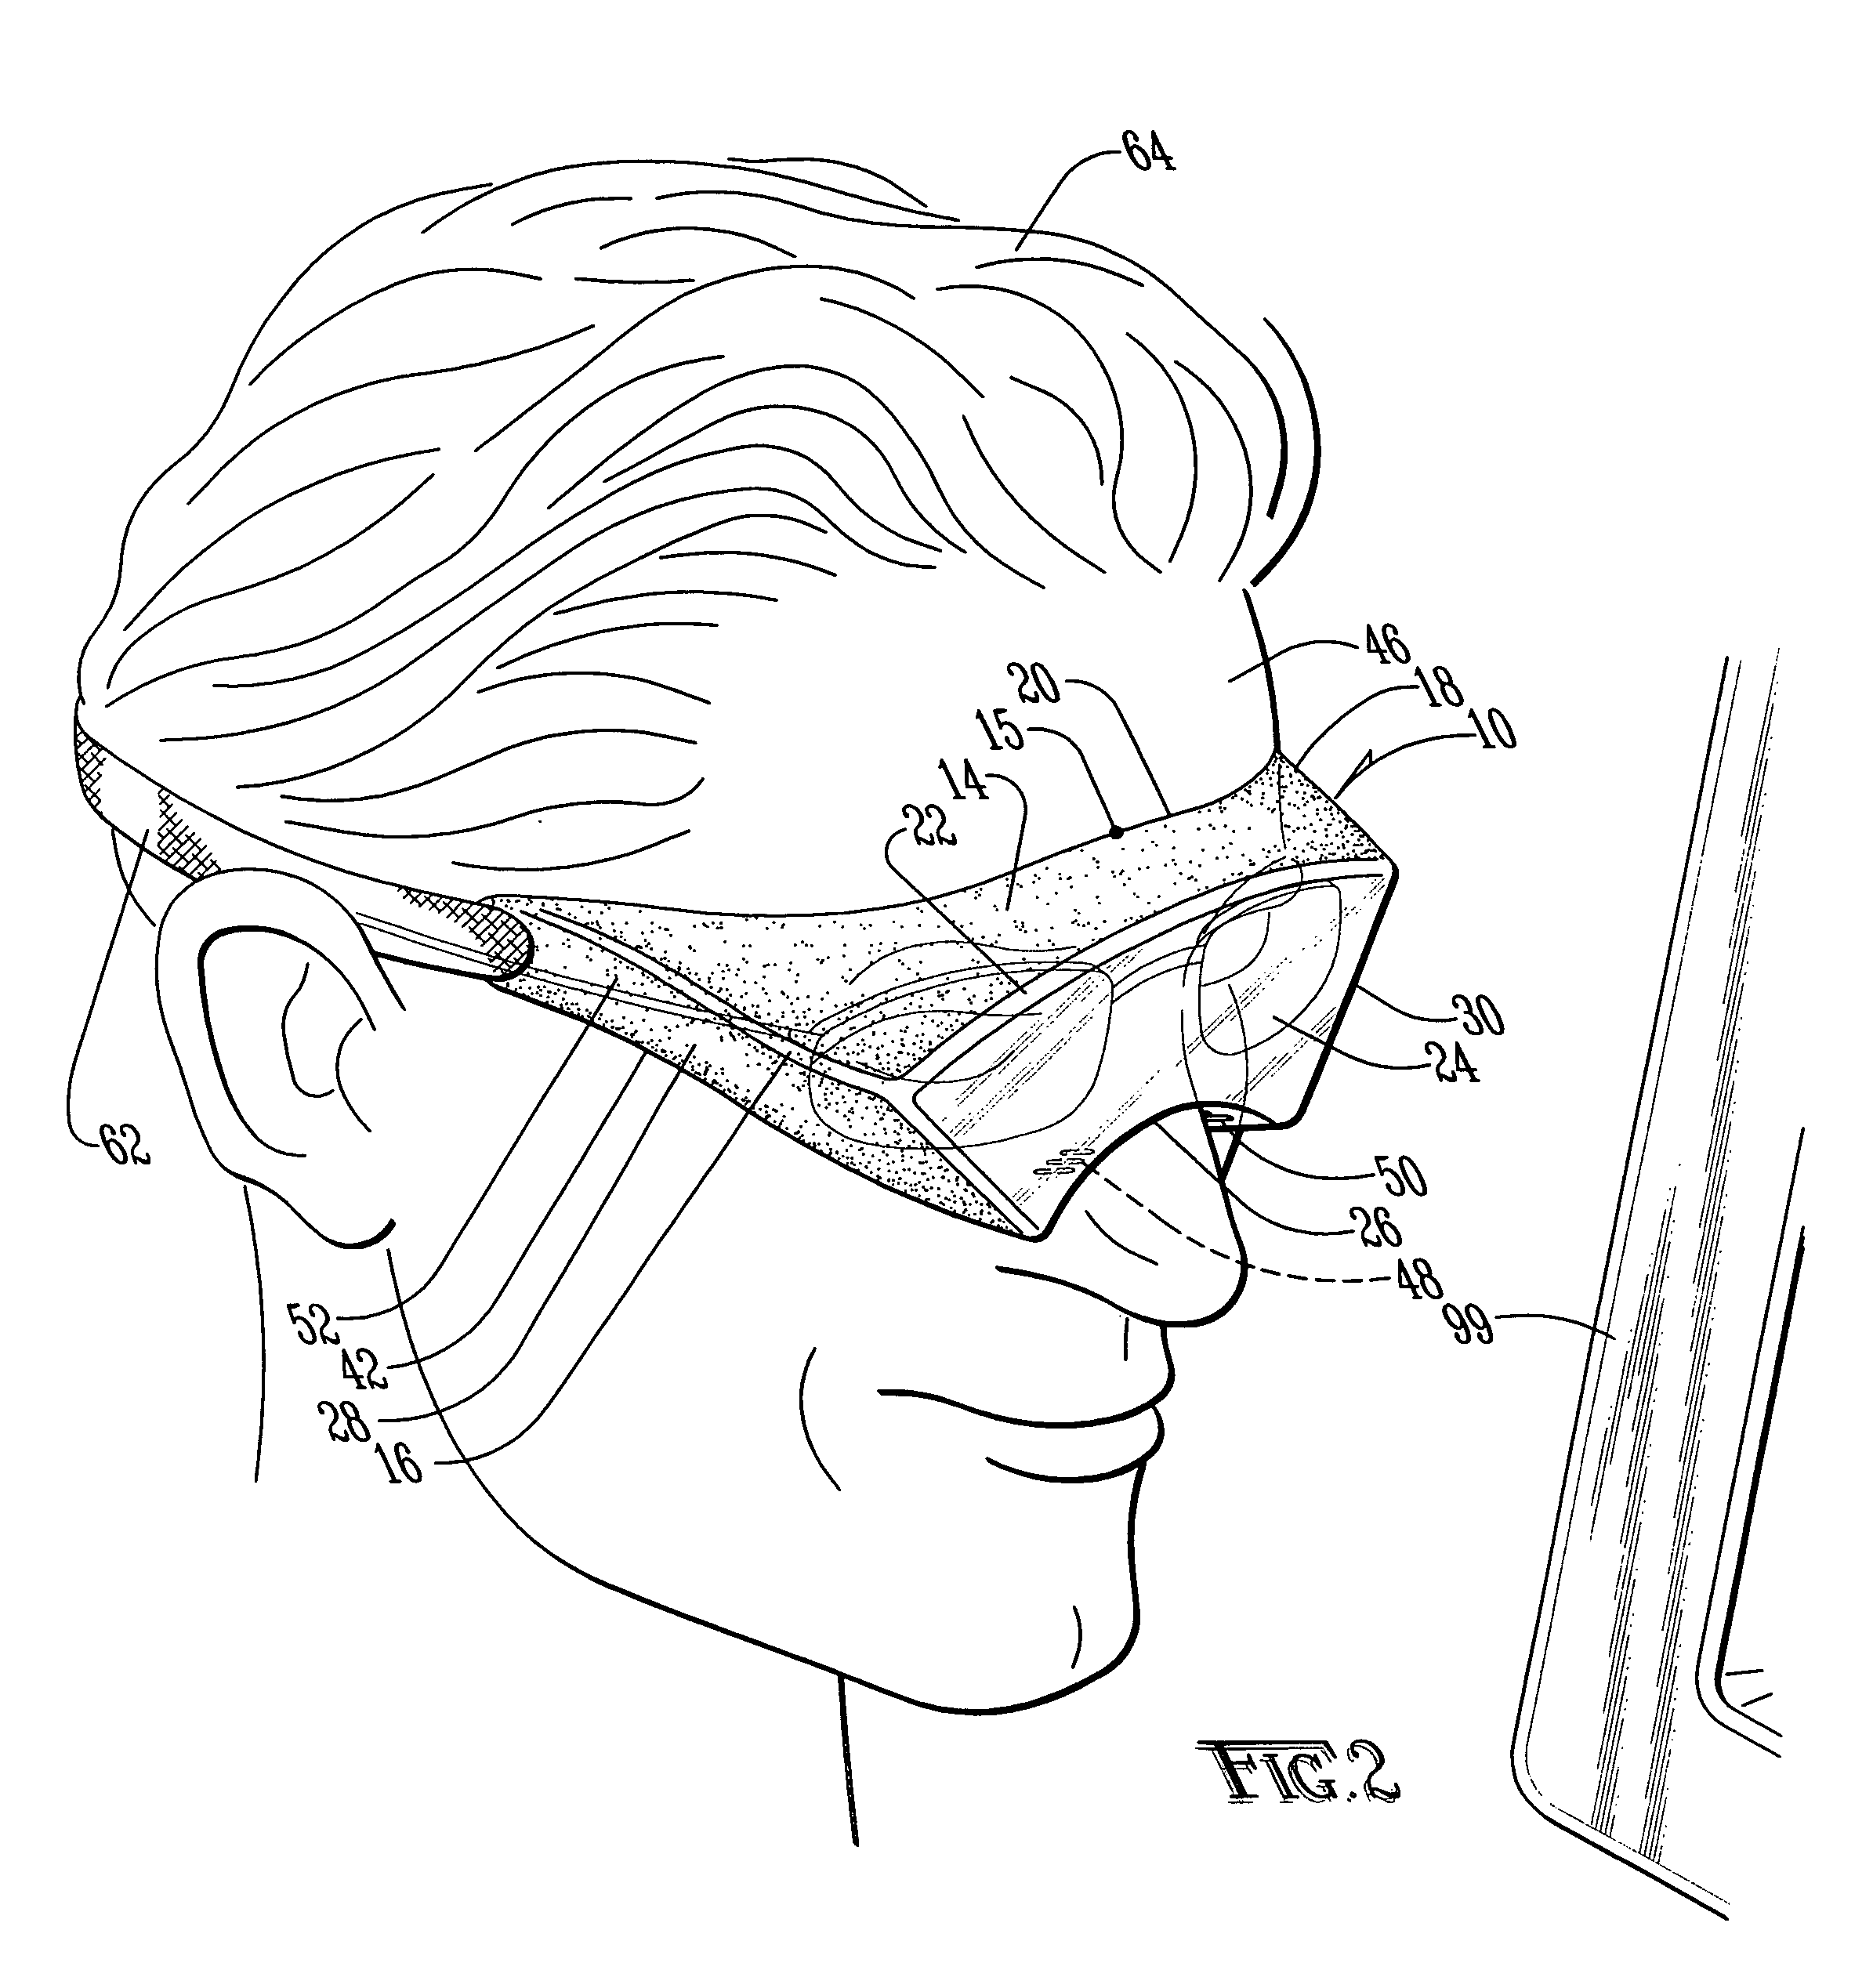 Multi-purpose goggle